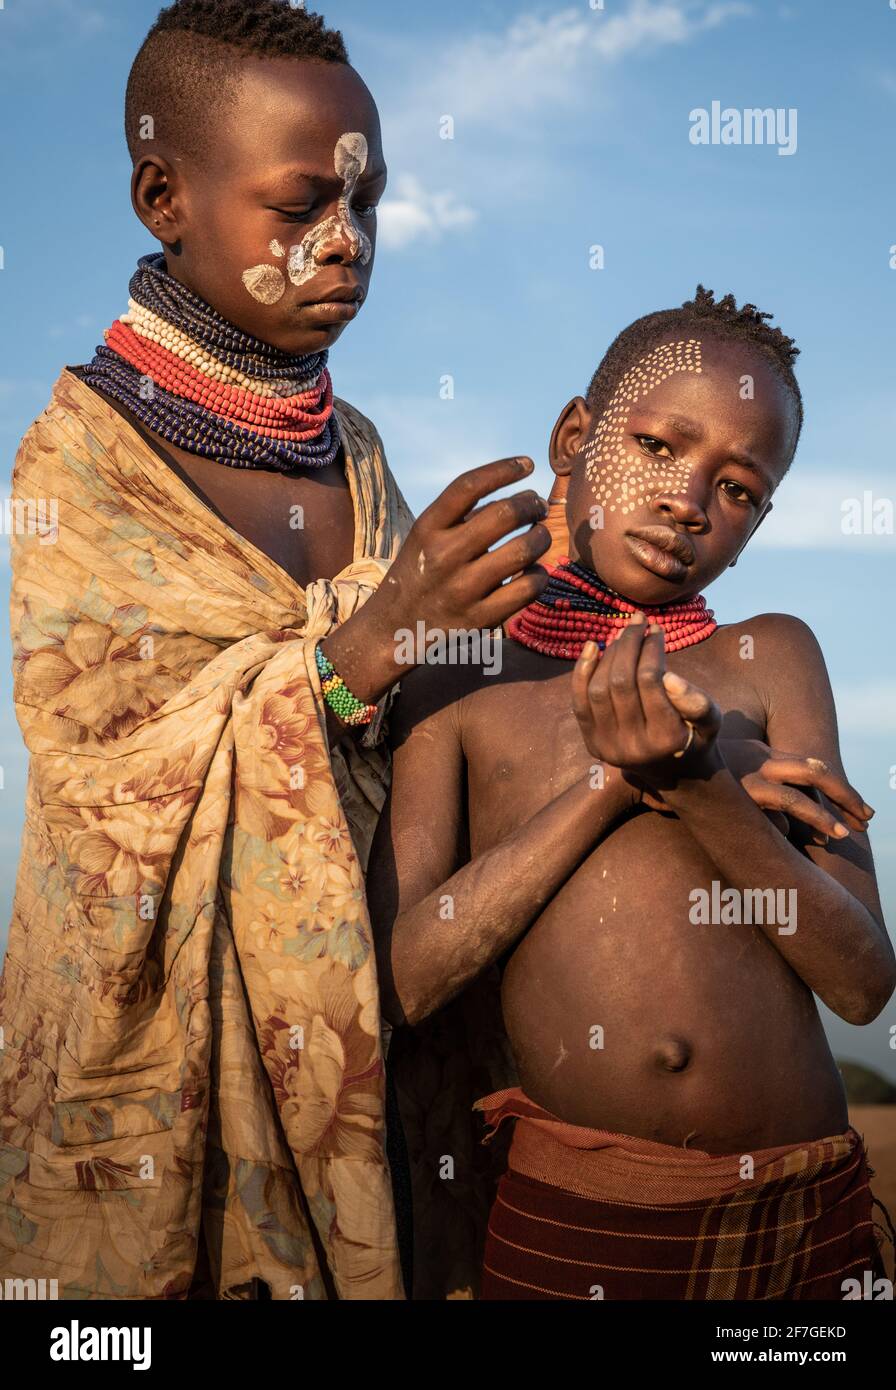 Dos chicos jóvenes de Kara llevaban collares con abalorios y pintura de cara mientras se presentaban para una foto. OMO VALLEY, ETIOPÍA: CONOCE A la tribu que solía TIRAR a los niños bo Foto de stock